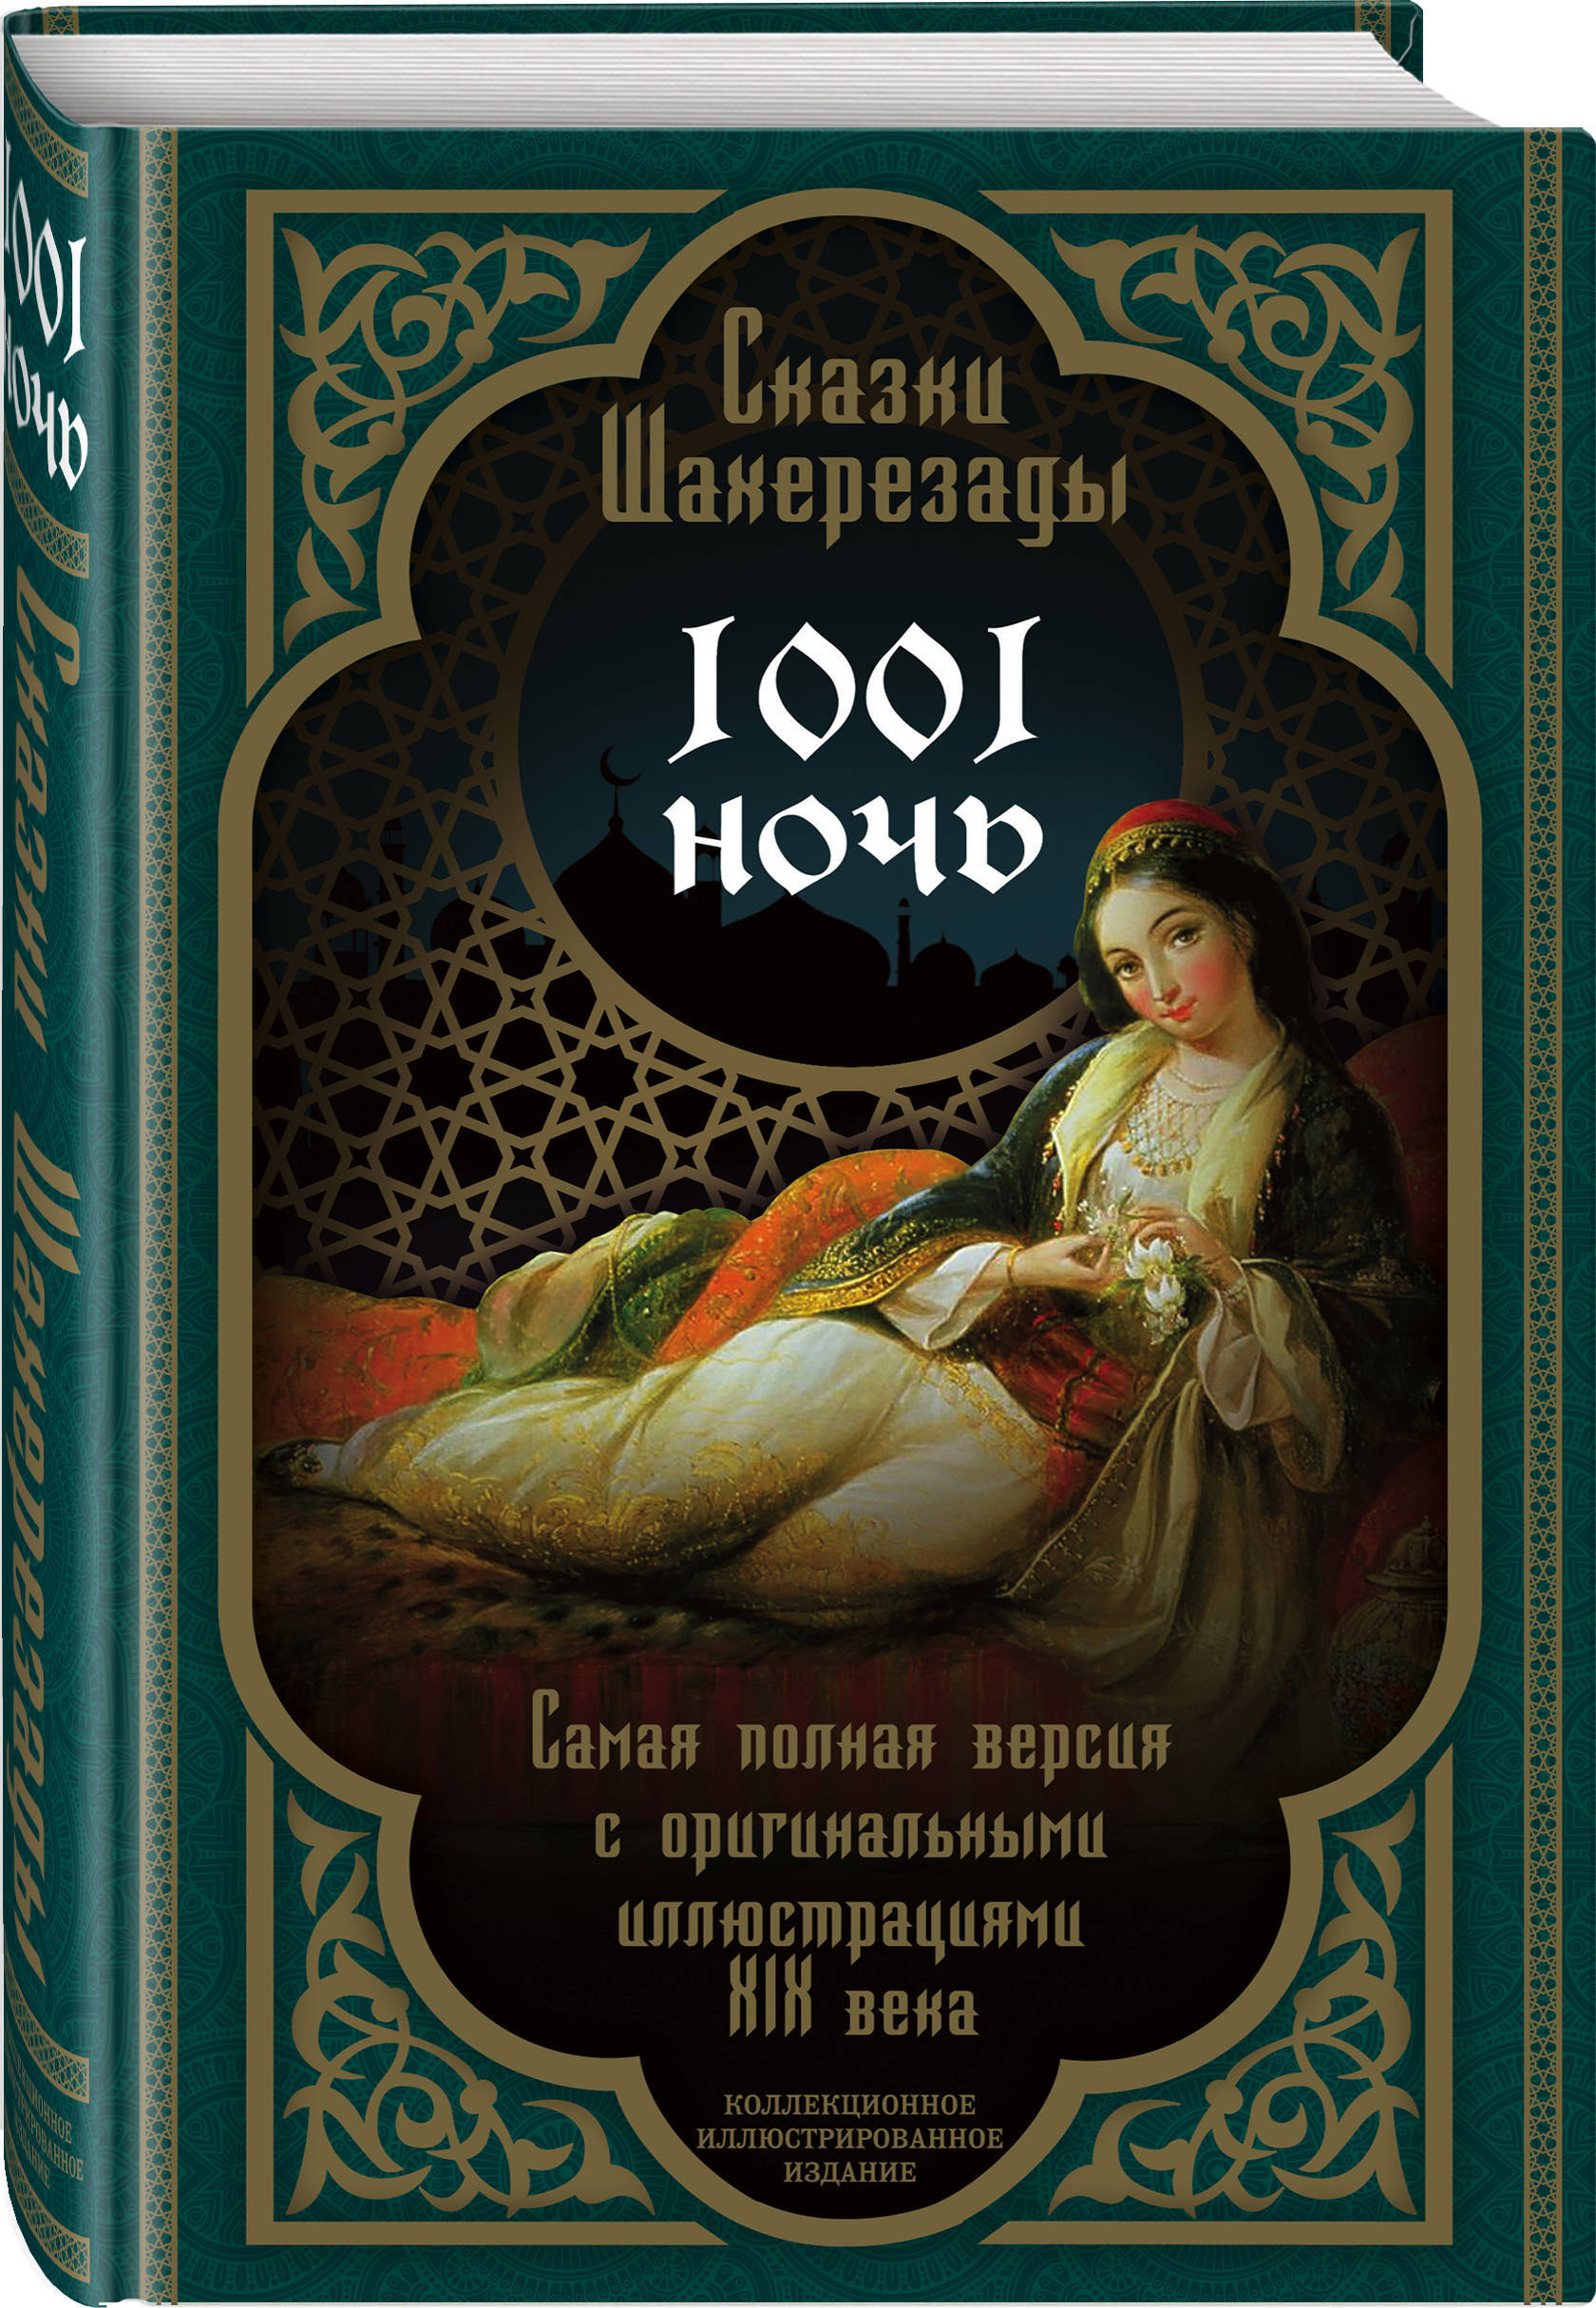 Книга сказки Шахерезады 1001 ночь